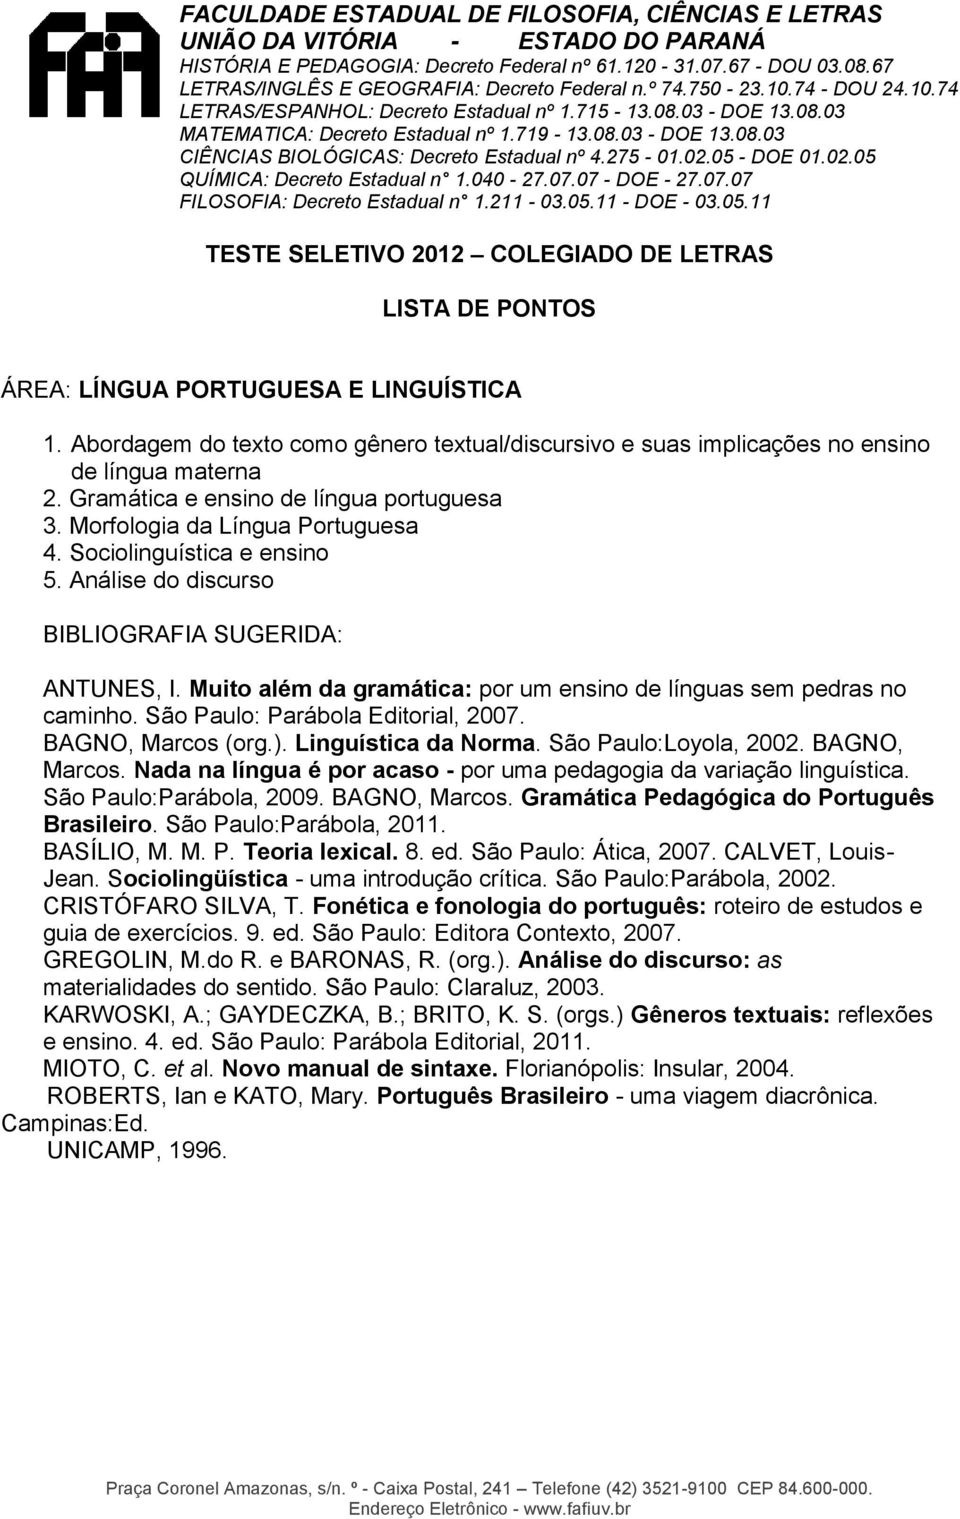 São Paulo: Parábola Editorial, 2007. BAGNO, Marcos (org.). Linguística da Norma. São Paulo:Loyola, 2002. BAGNO, Marcos. Nada na língua é por acaso - por uma pedagogia da variação linguística.